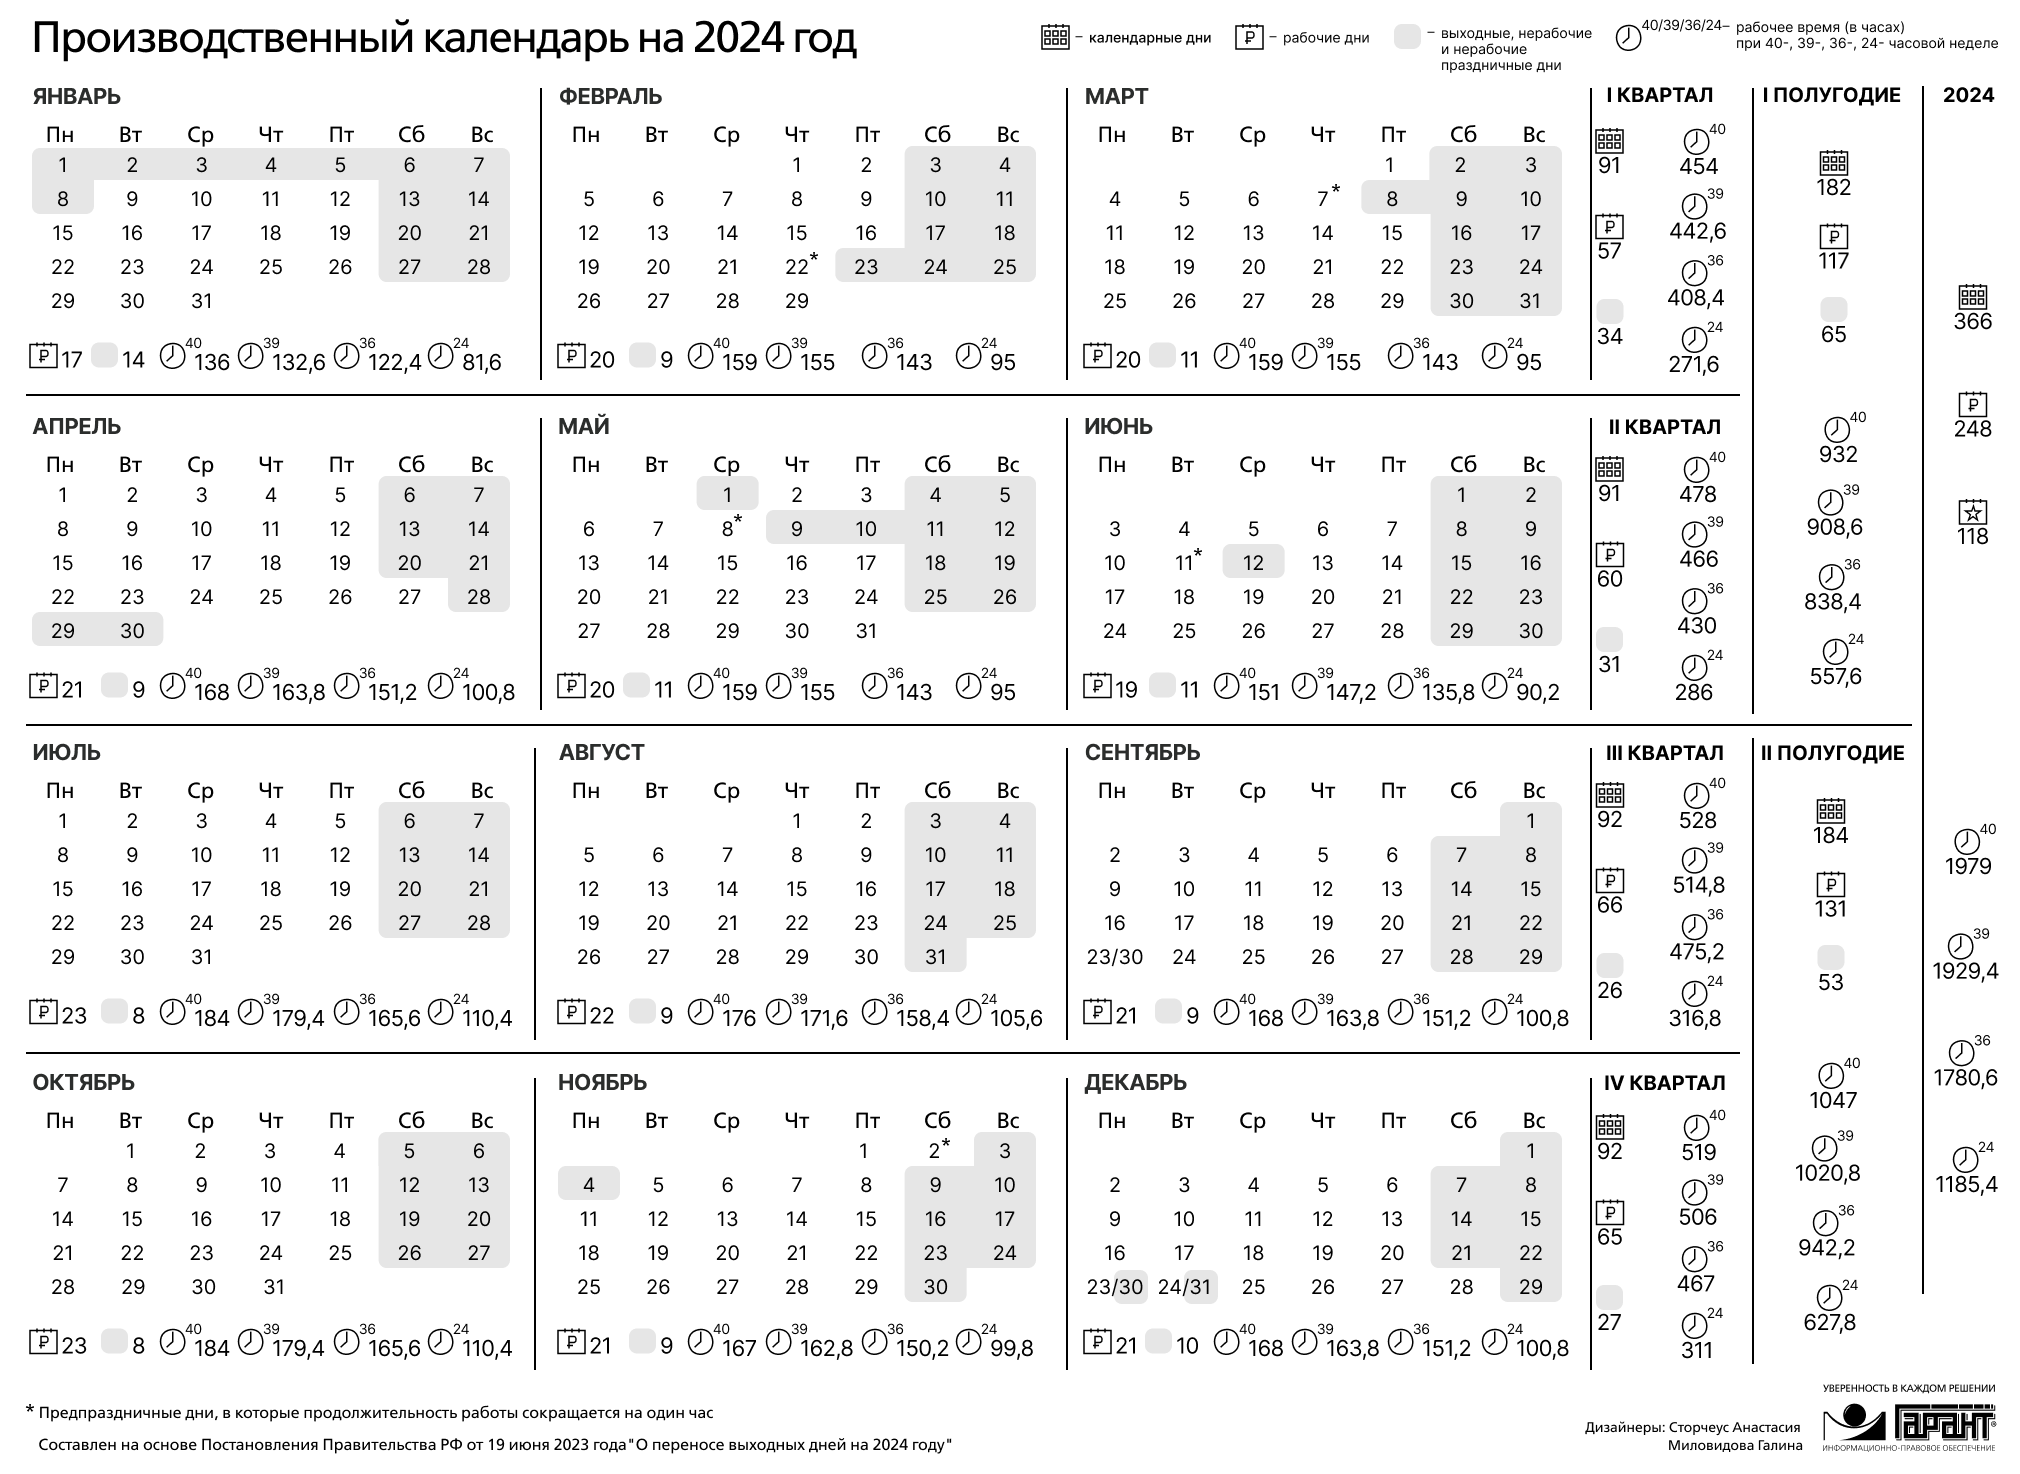 Праздничные дни 2024 без выходных. Праздничные дни 2024 года в России производственный календарь. Календарь на 2024 год с праздниками и выходными производственный РФ. Производственный календарь на 2024 го од. Зводственный календарь на 2024.